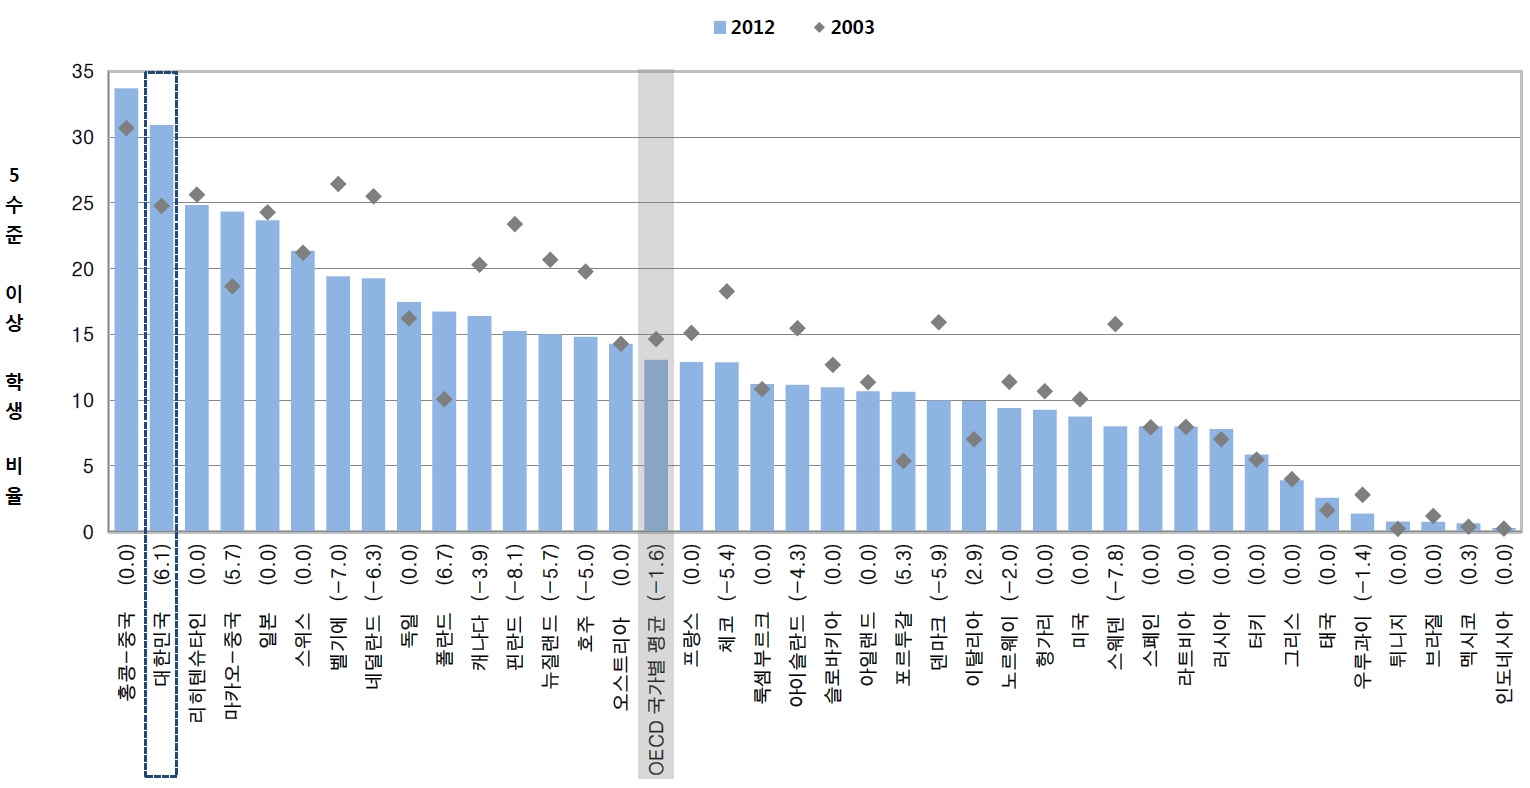 PISA 2003과 PISA 2012에서 수학 5수준 이상 학생 비율